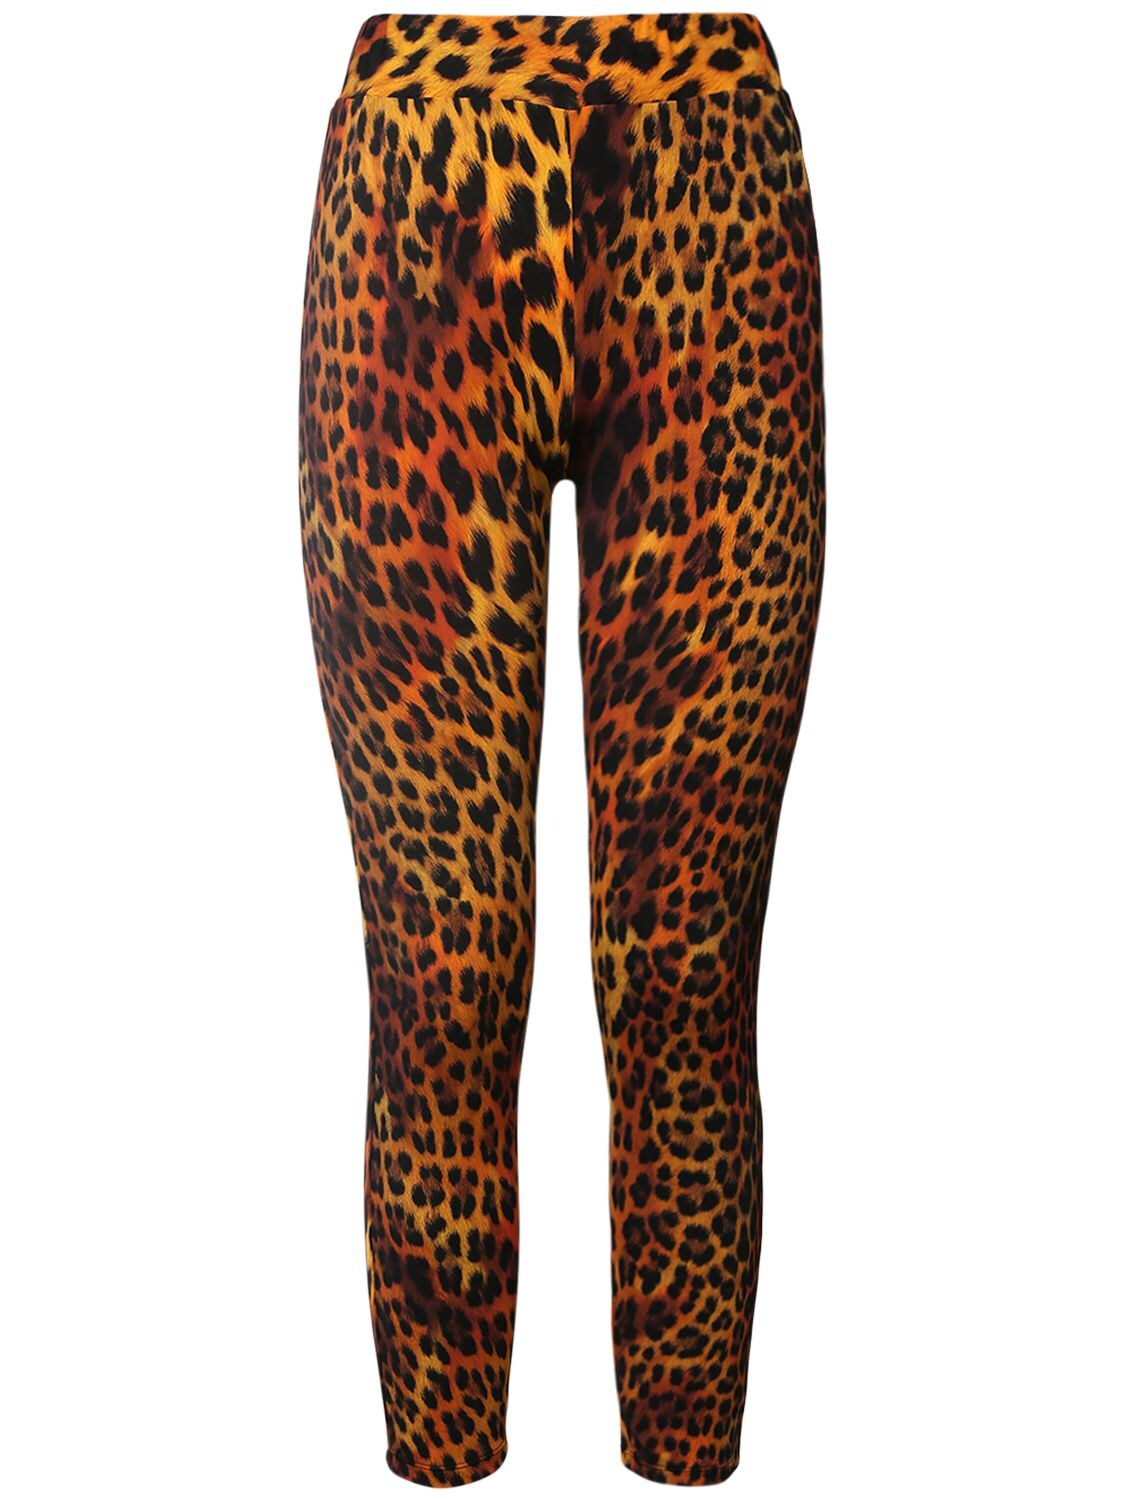 Leopard Print Jersey Leggings